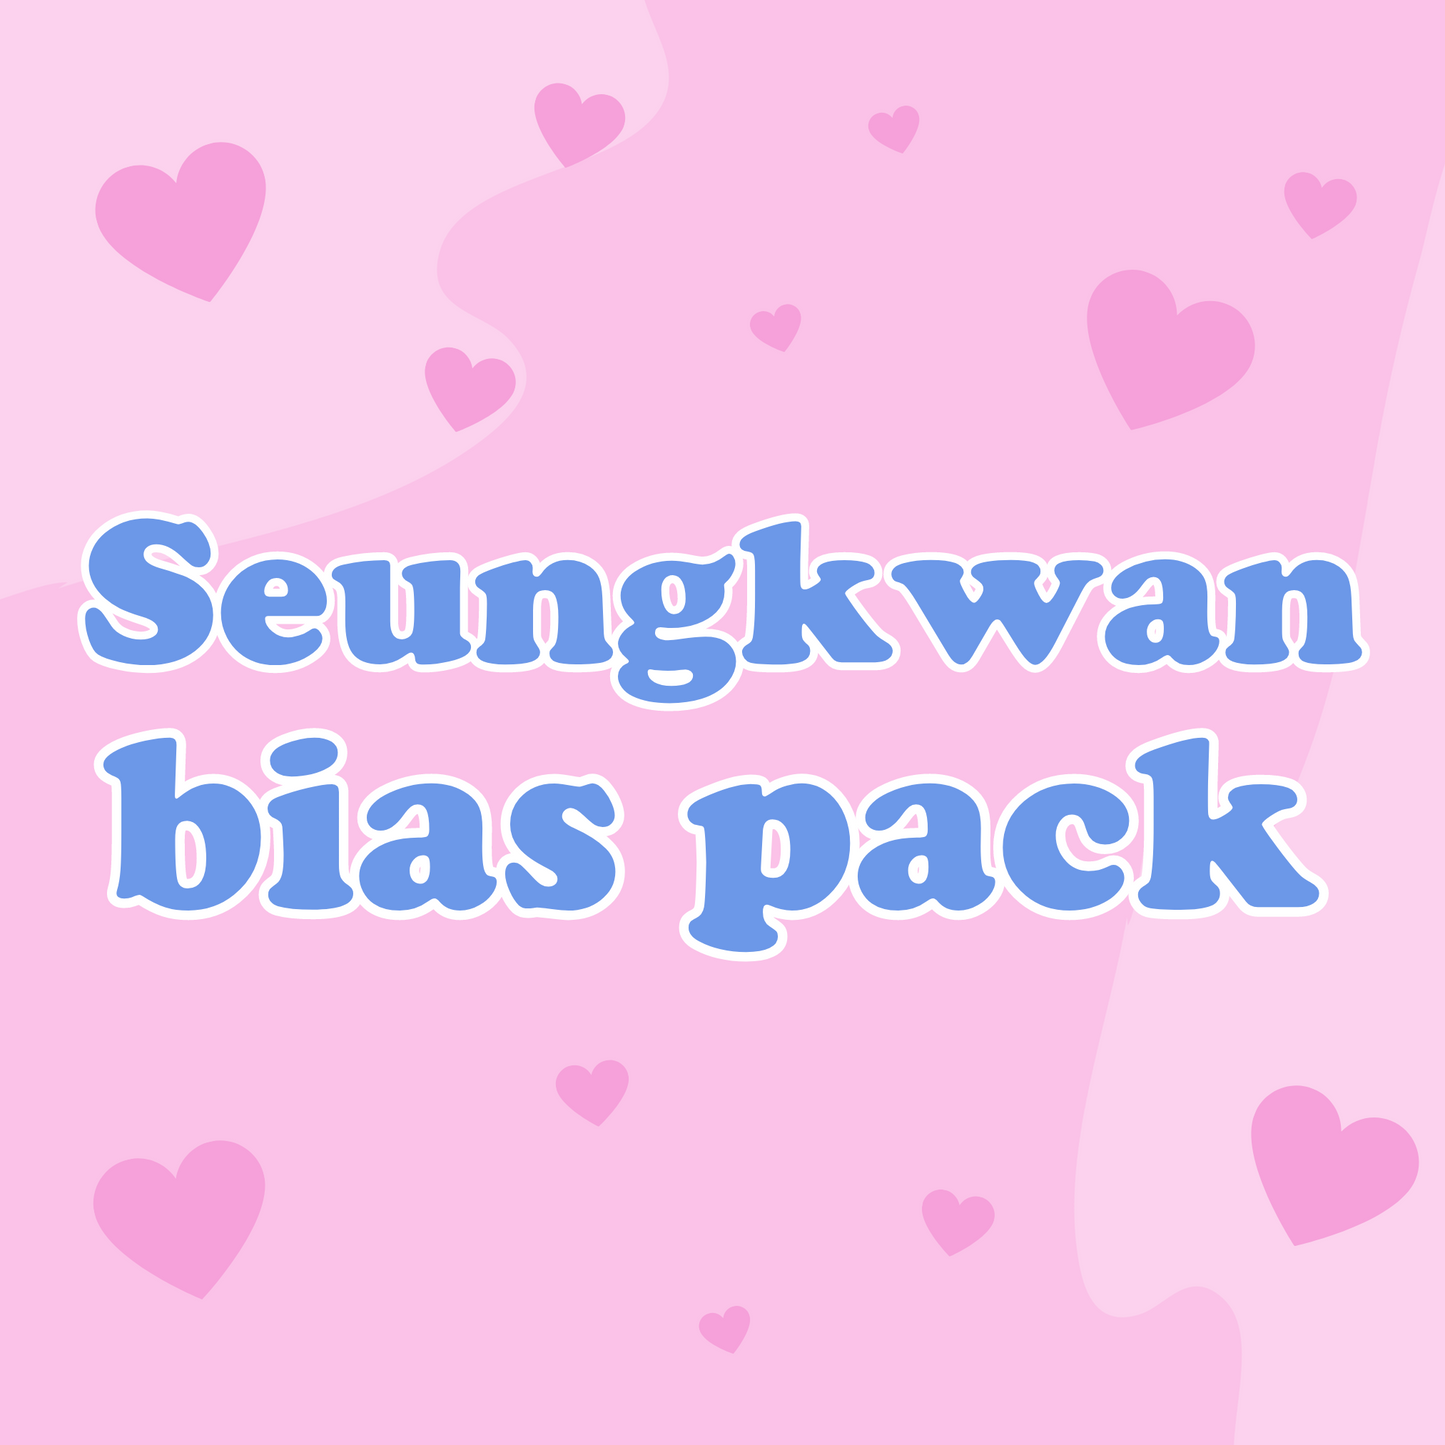 Seungkwan bias pack